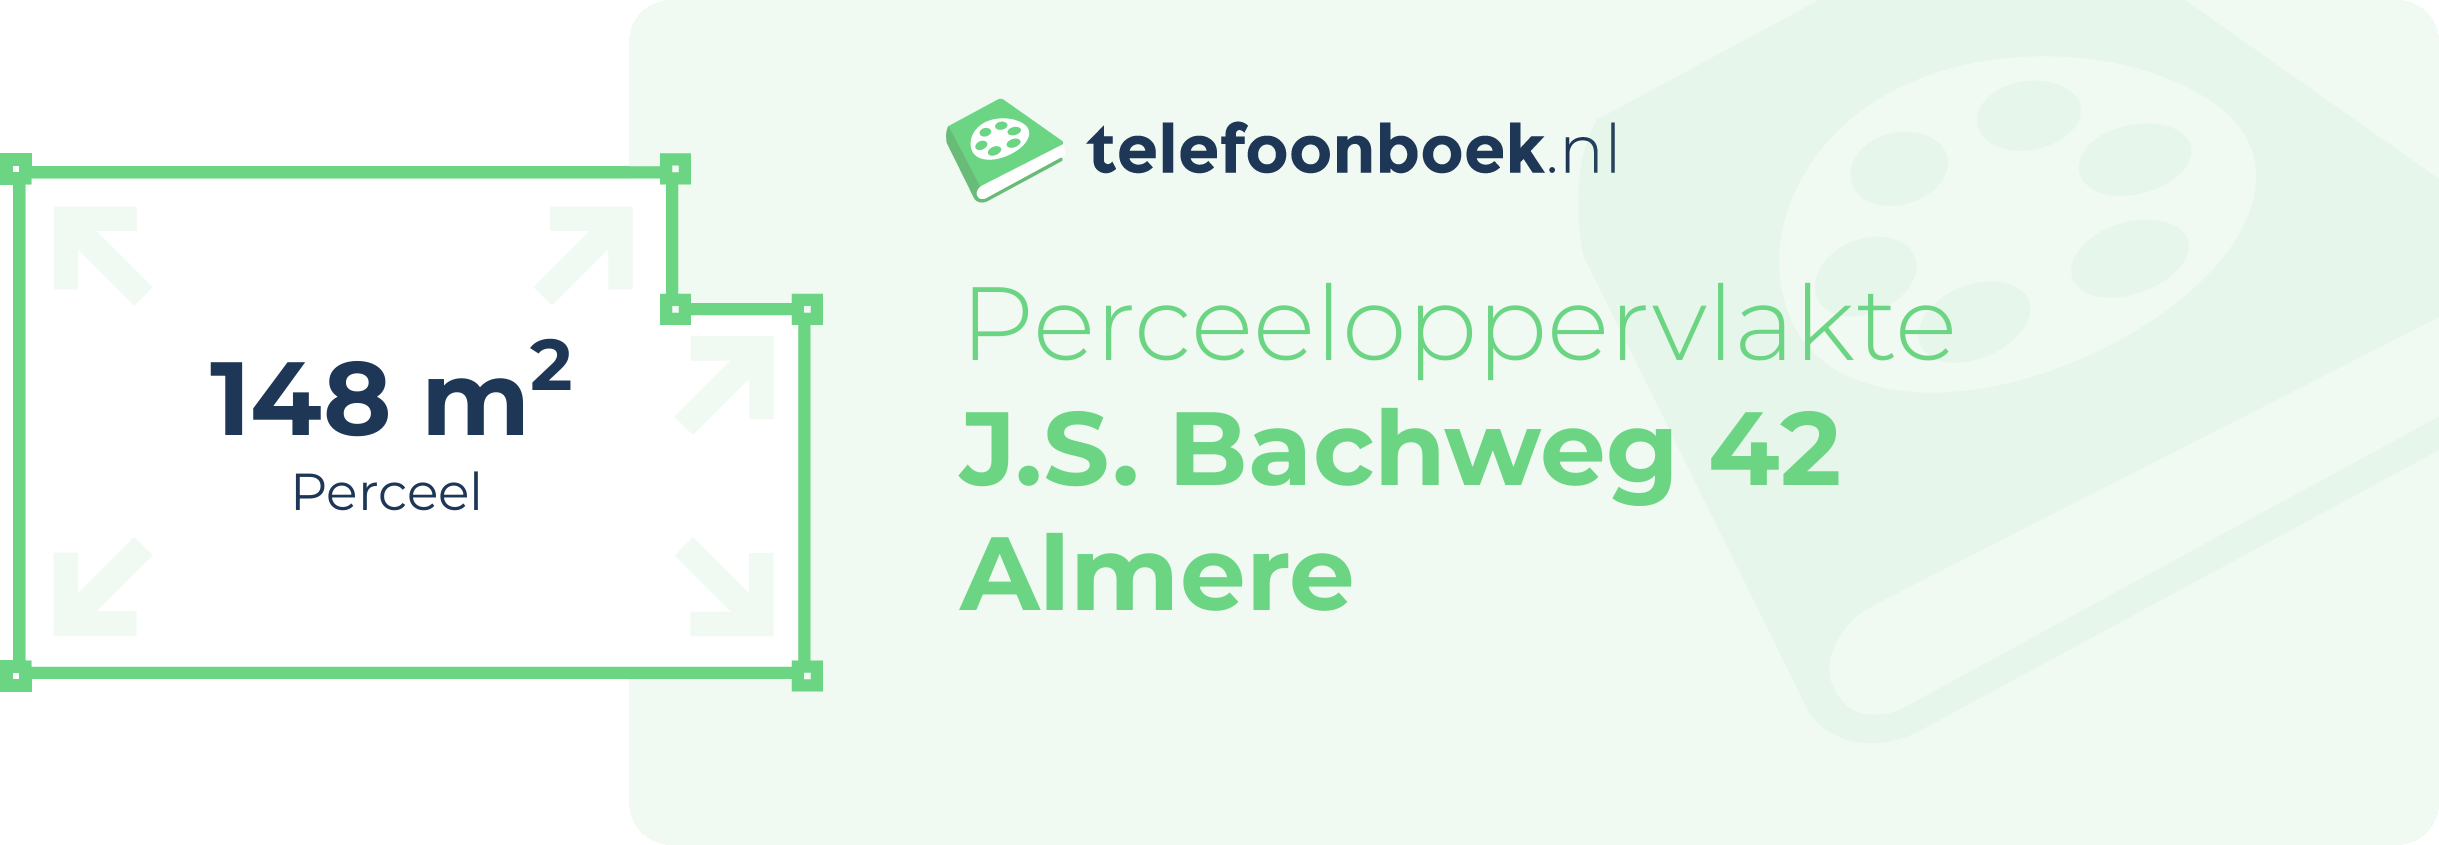 Perceeloppervlakte J.S. Bachweg 42 Almere